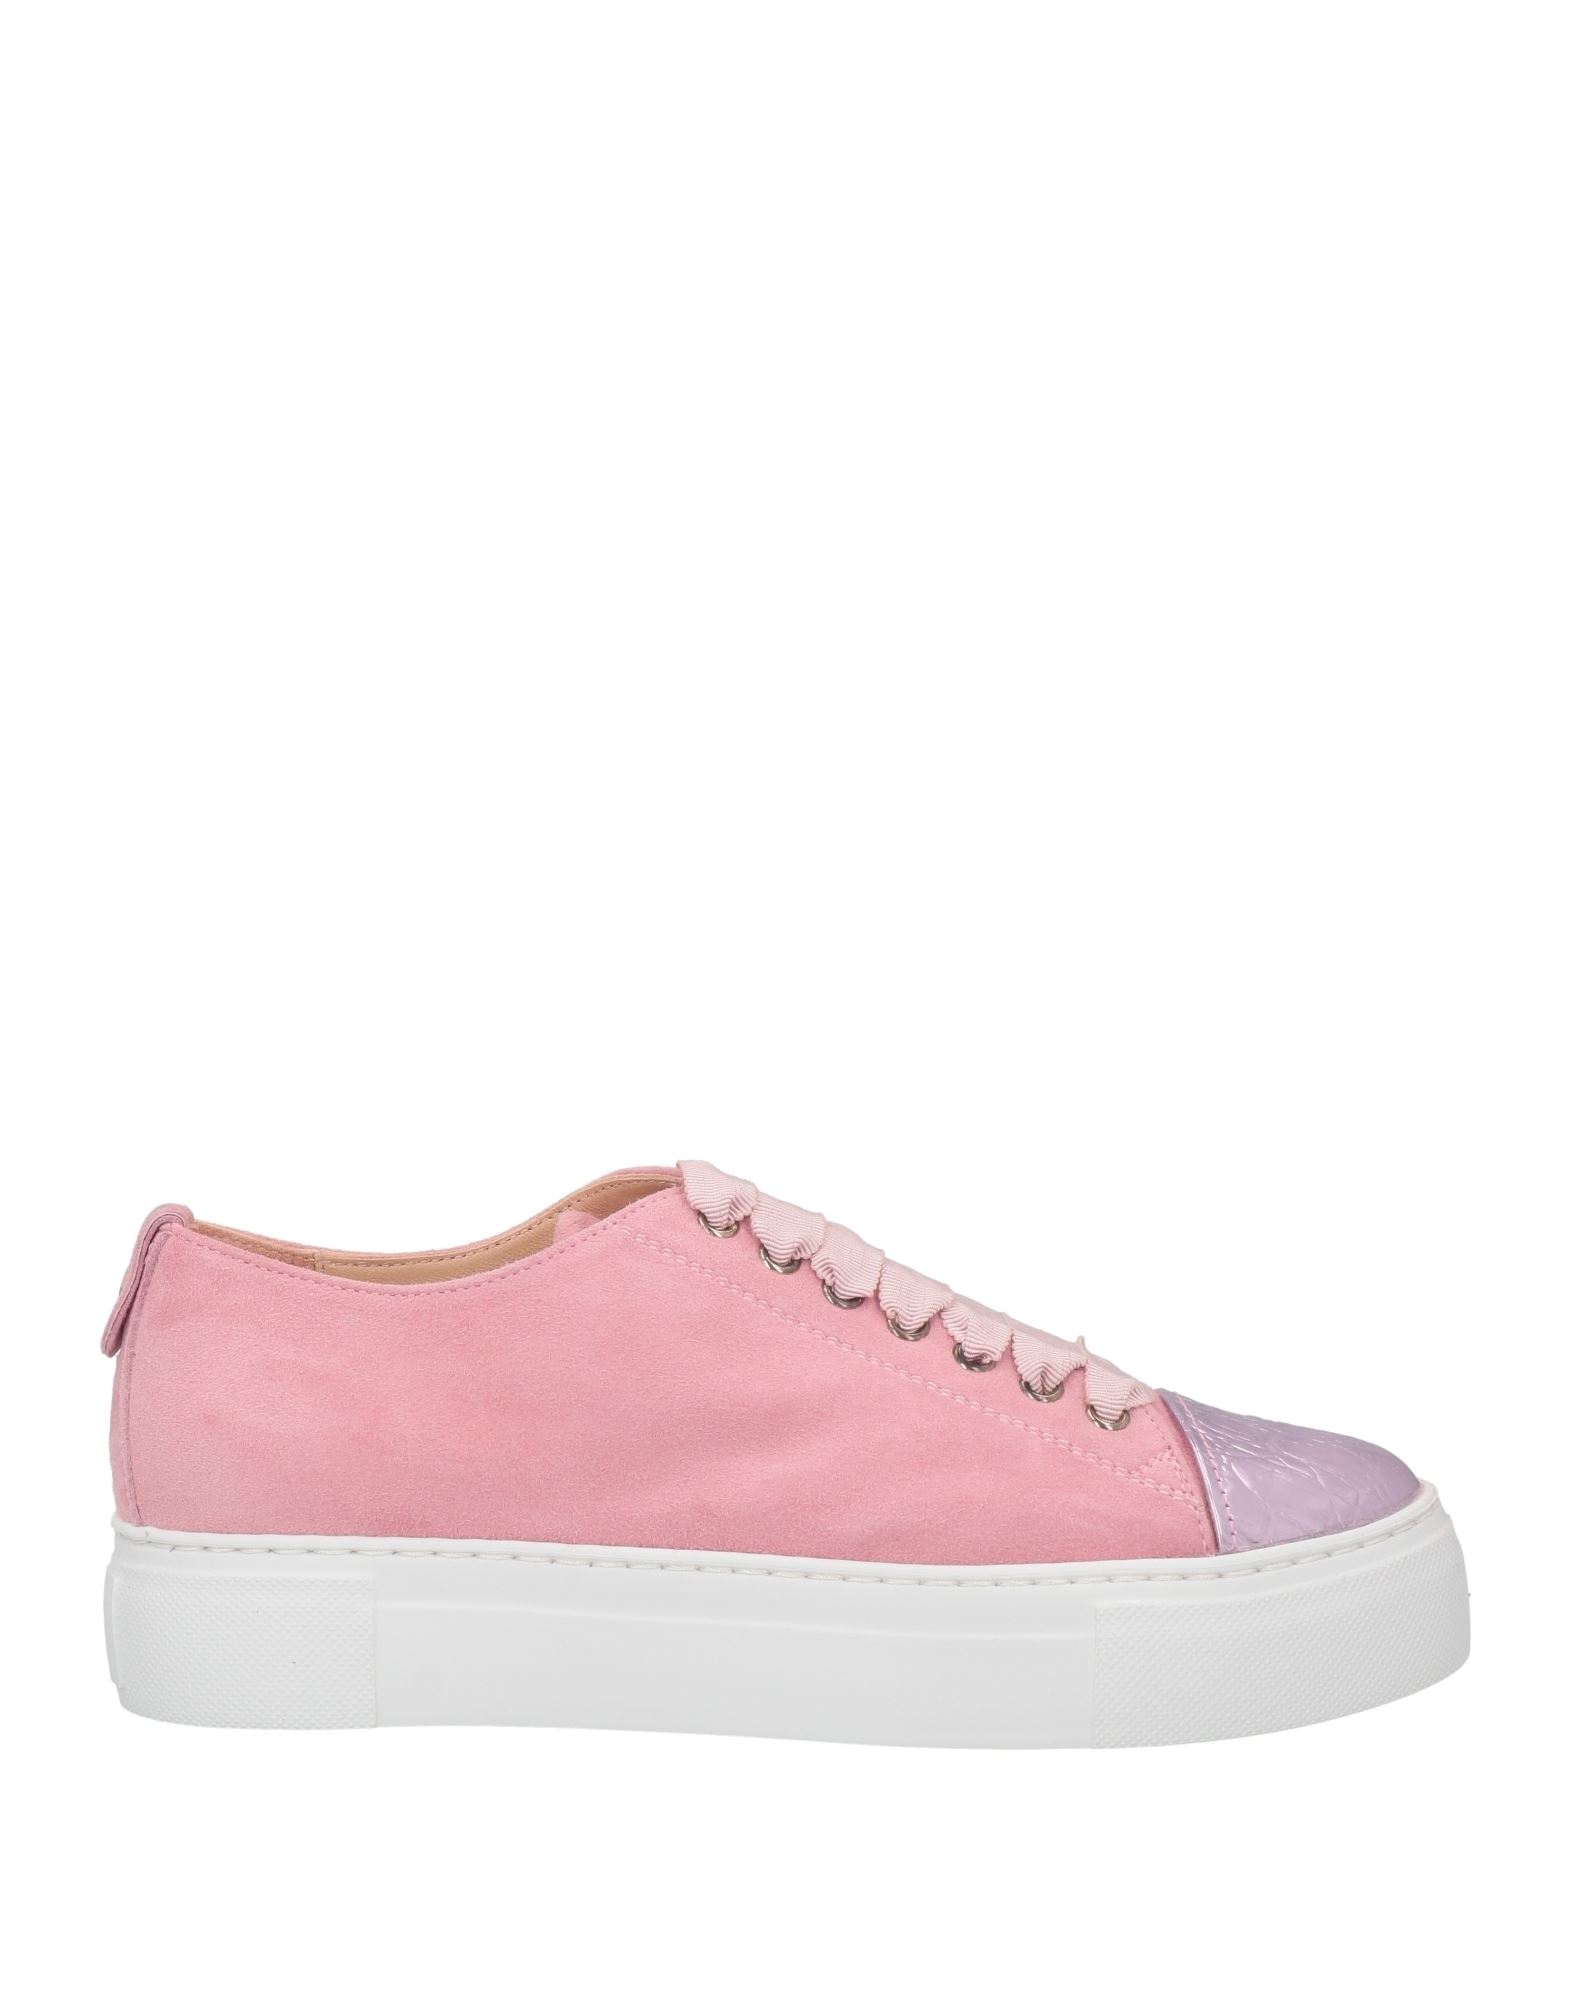 Agl Attilio Giusti Leombruni Sneakers In Pink